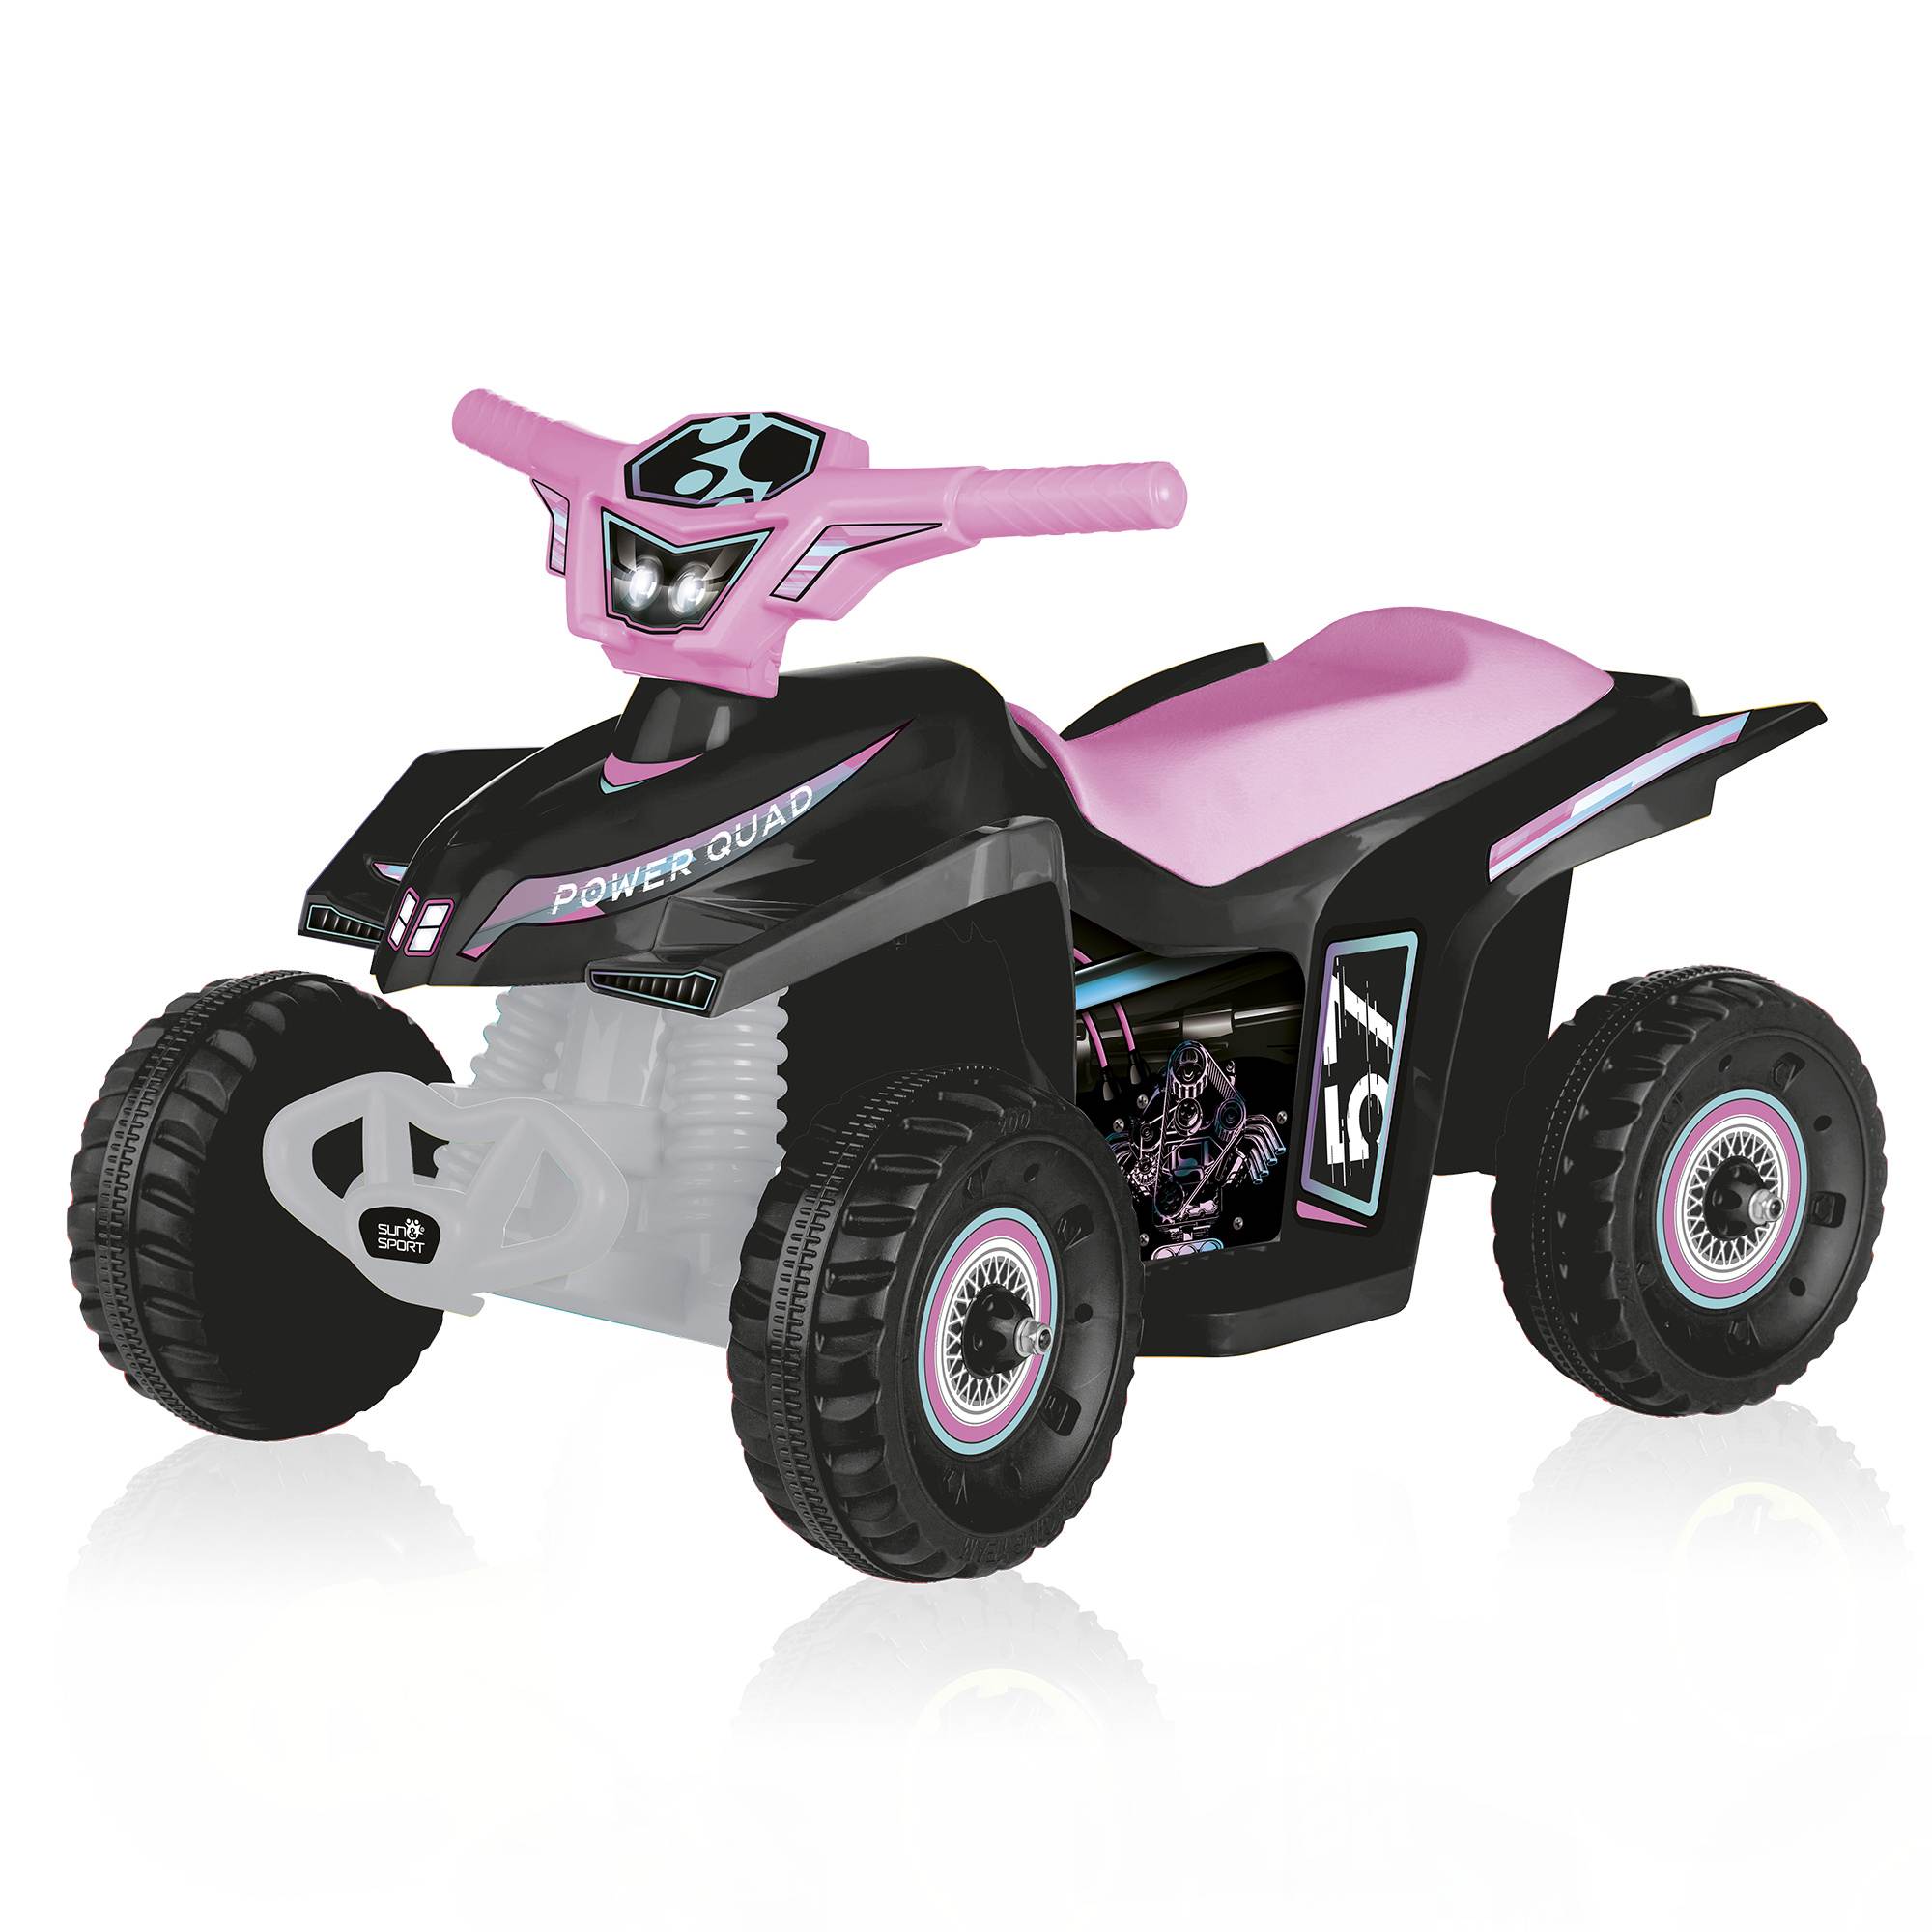 Quad elettrico per bambini - grandi ruote, stabilità e guida realistica fino a 2,7 km/h - peso massimo supportato 50 kg - disponibile in due varianti - SUN&SPORT